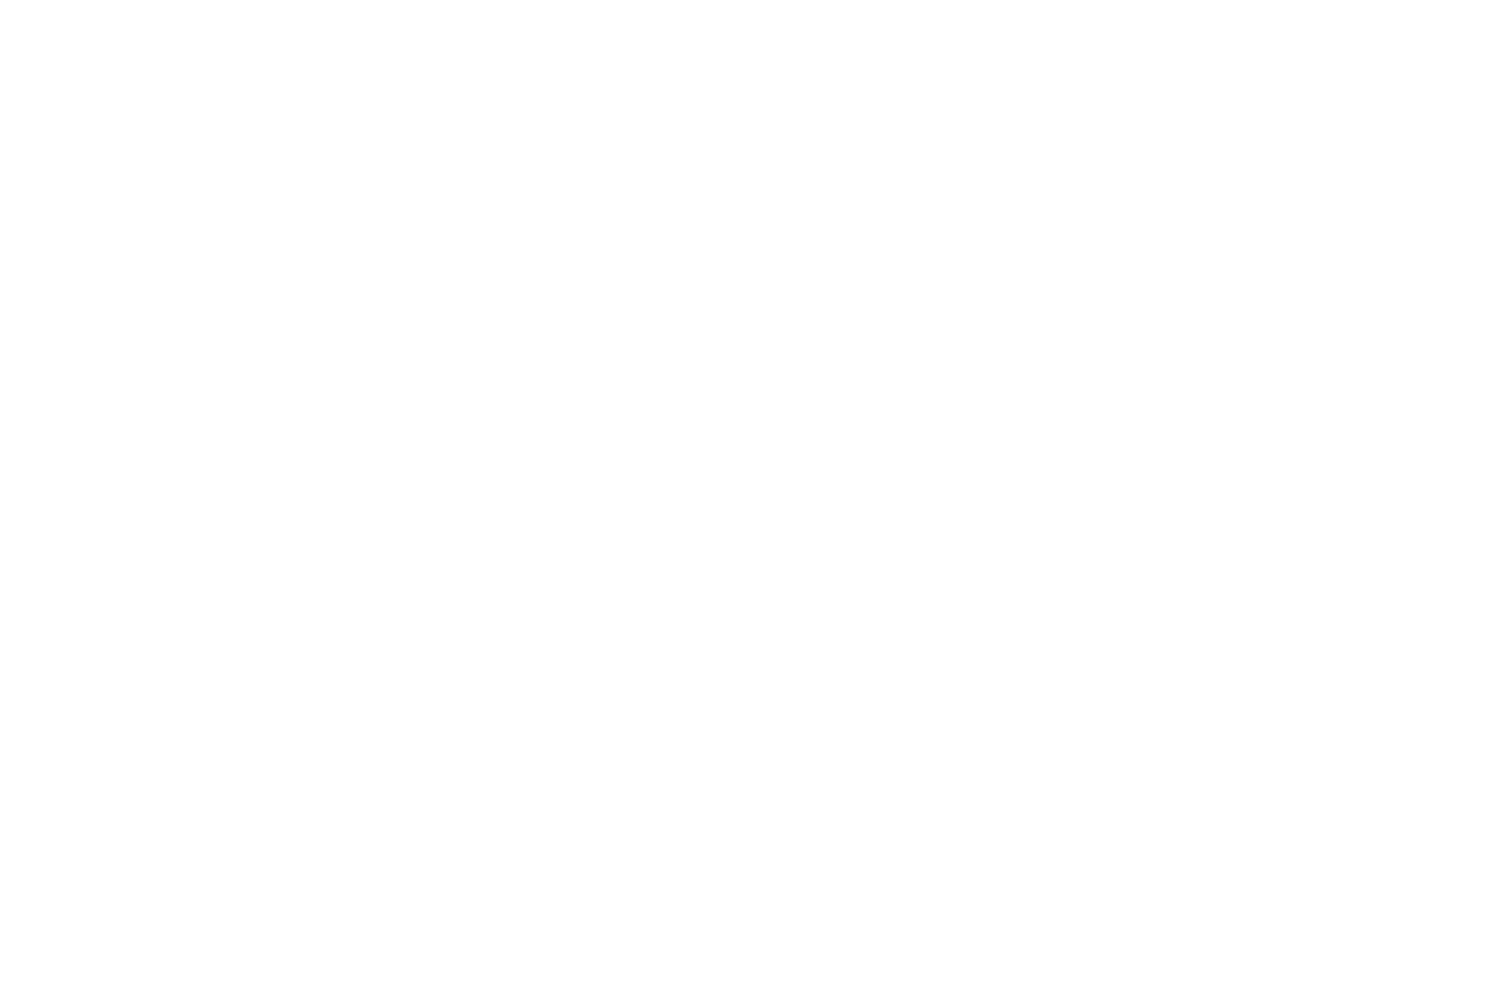 Carine Van Hee